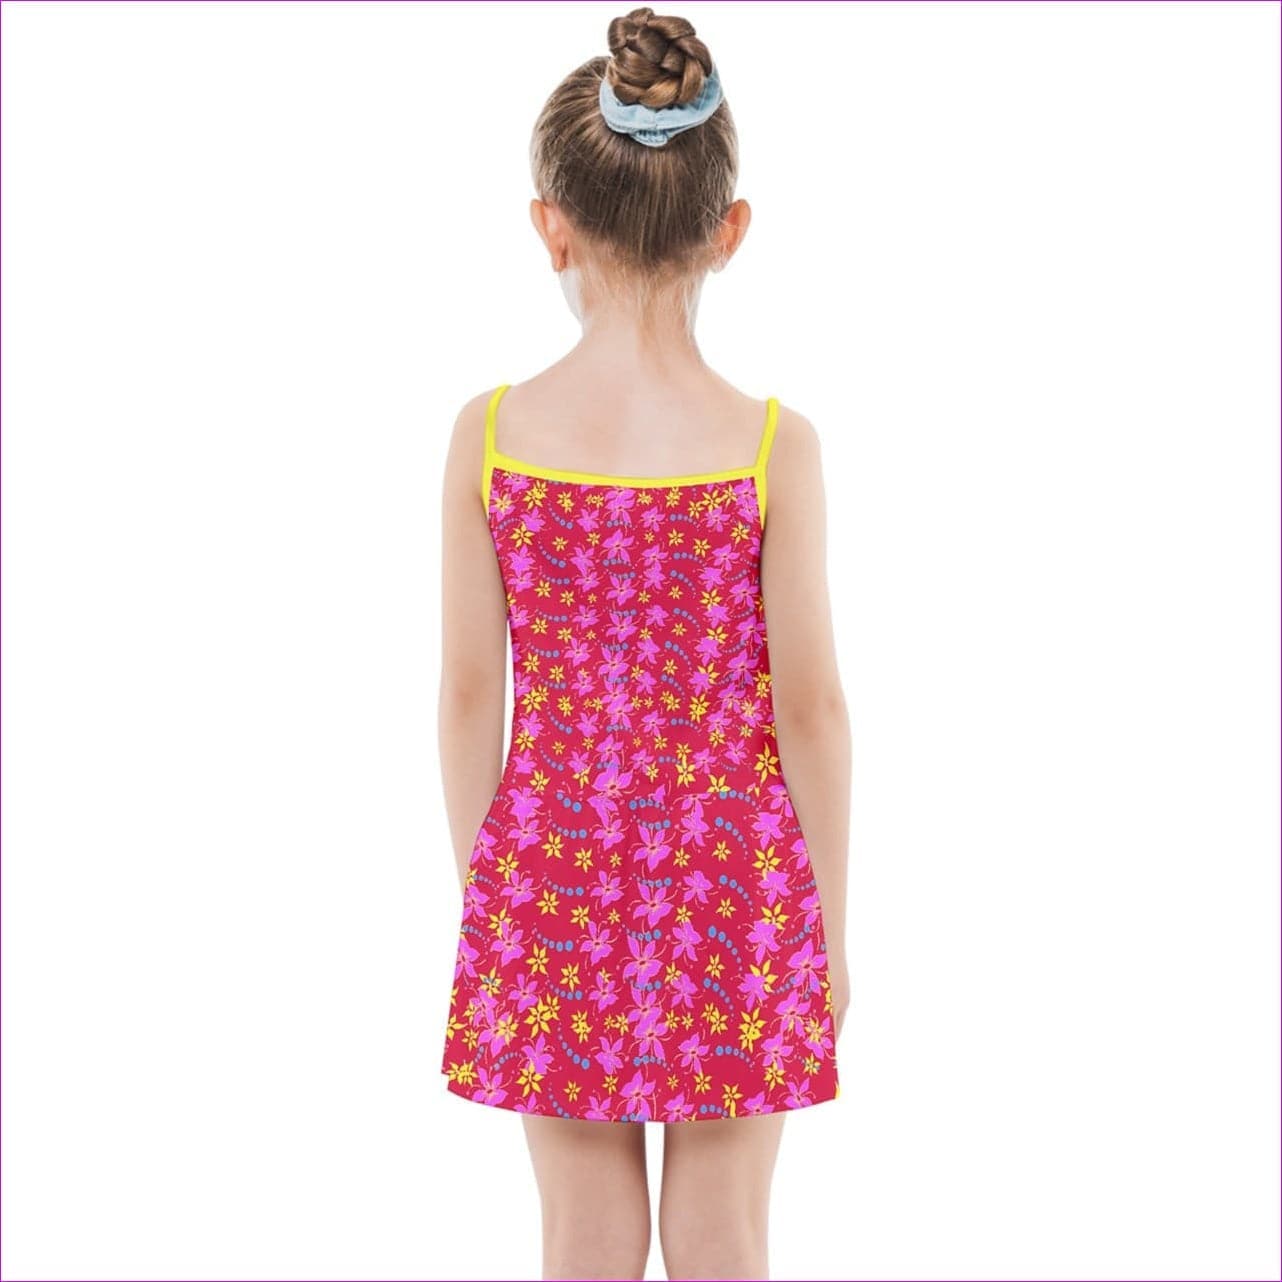 Floral Wear Kids Girls Summer Sun Dress - kid's dress at TFC&H Co.